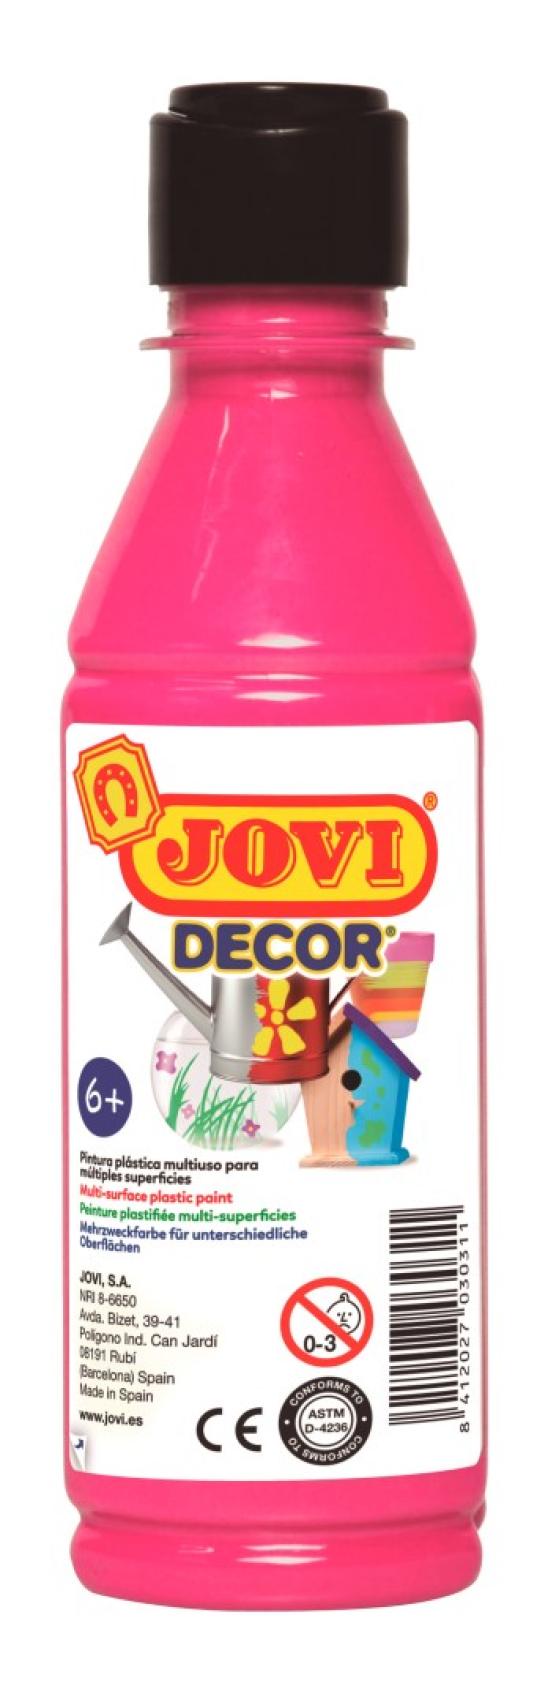 Barvy akrylov JOVI jovidecor 250ml rov - 68008 - Kliknutm na obrzek zavete